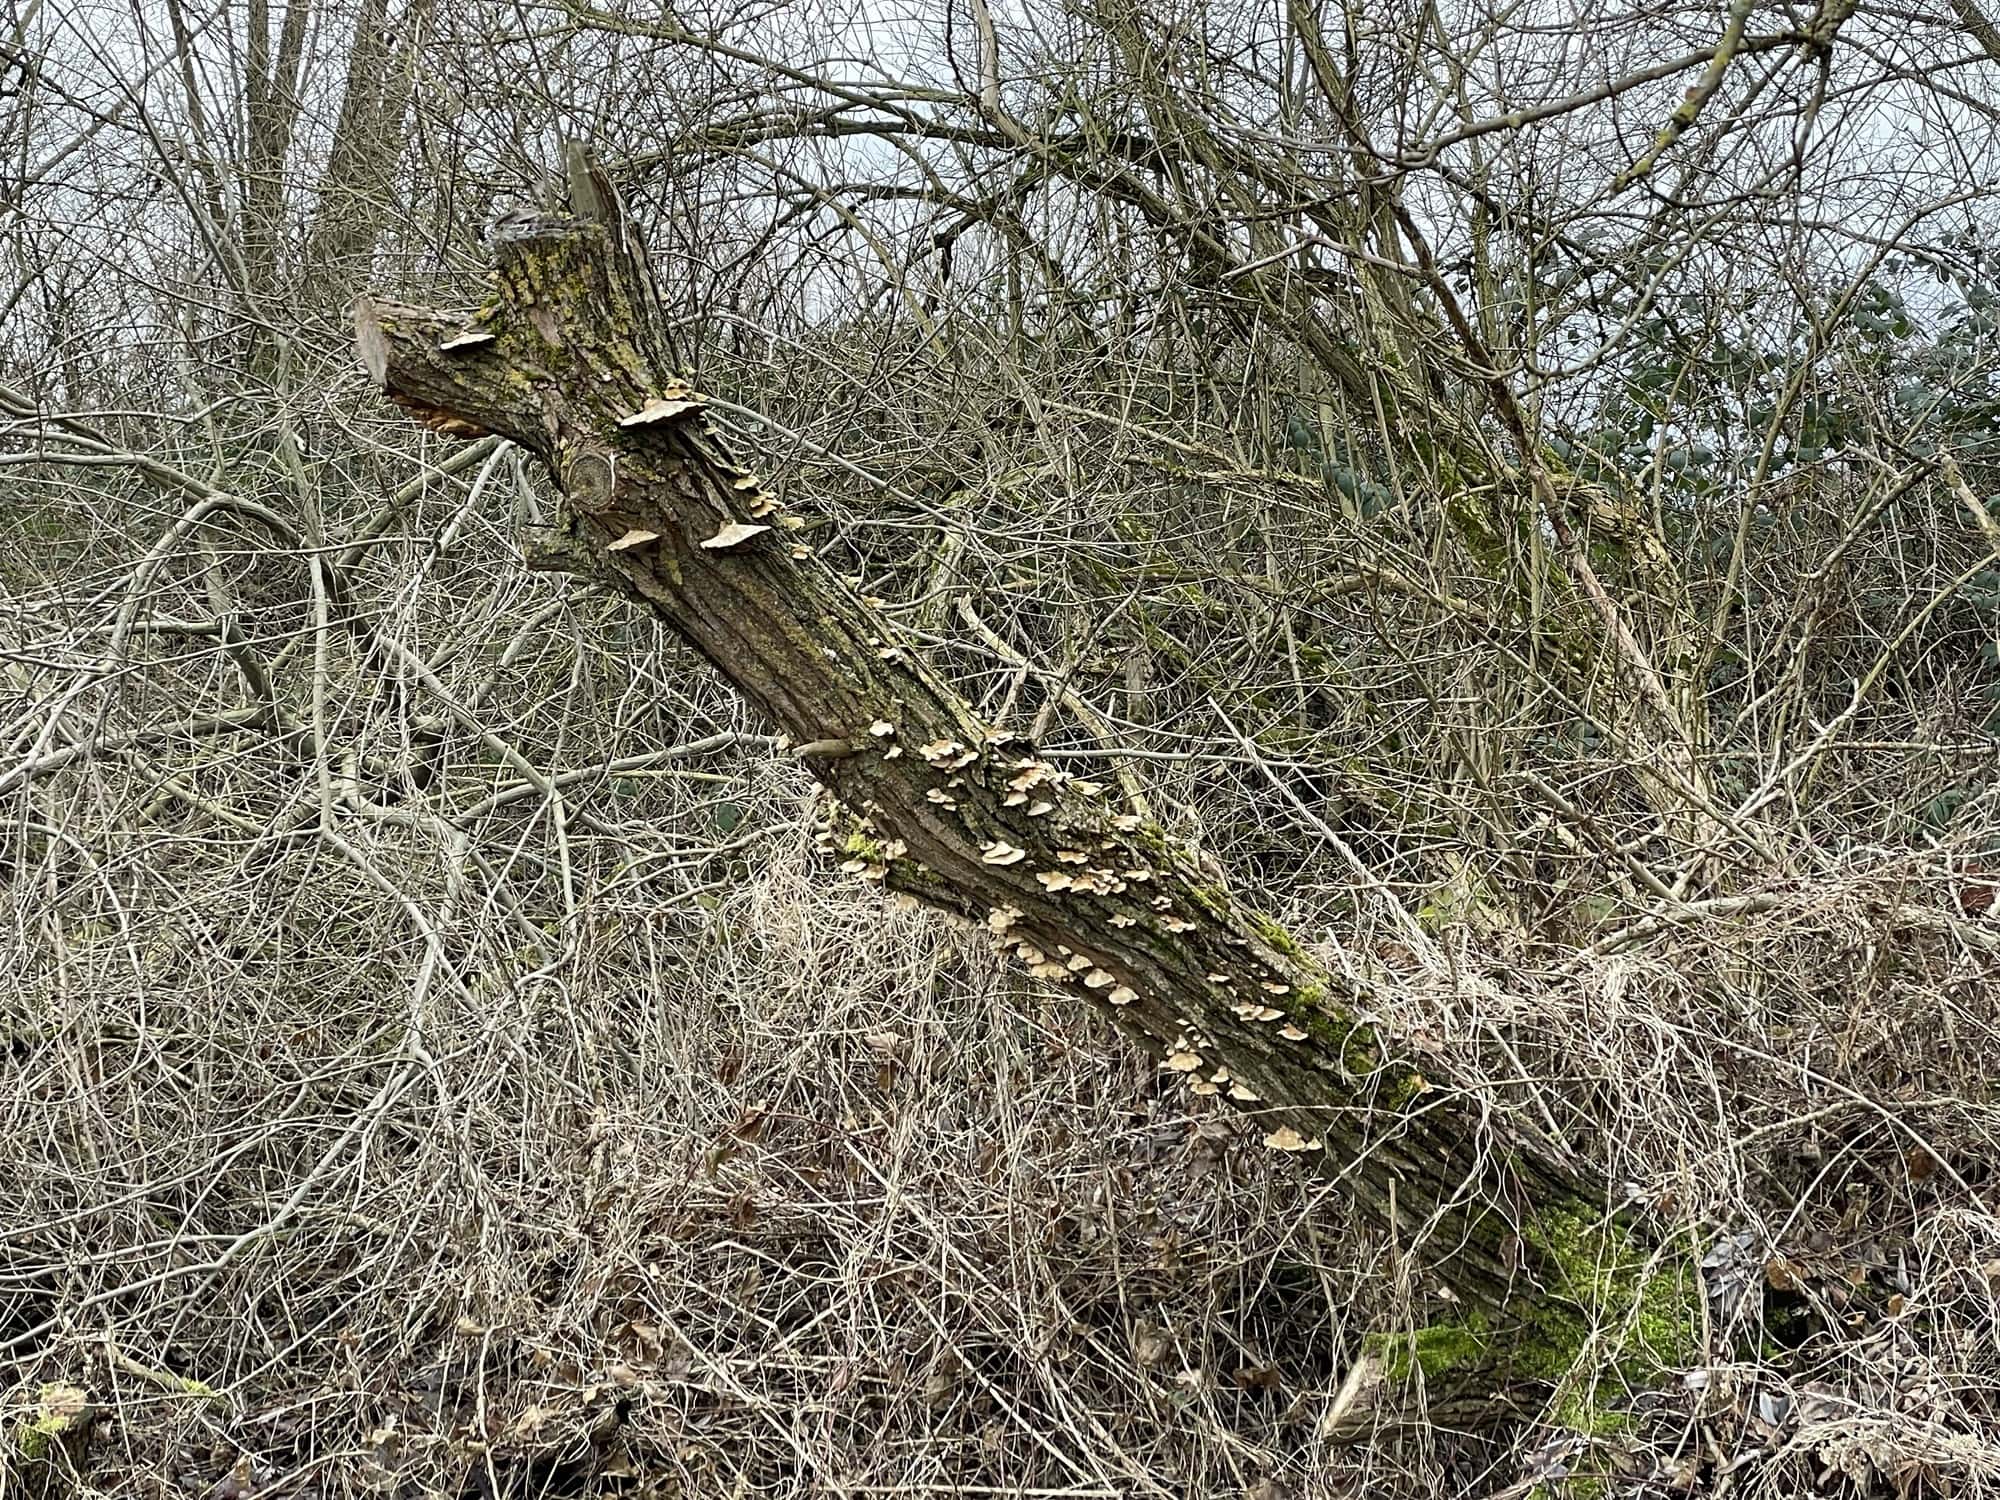 Schröger Baumstamm mit Baumpilzen in einem Gestrüppunterhokz.